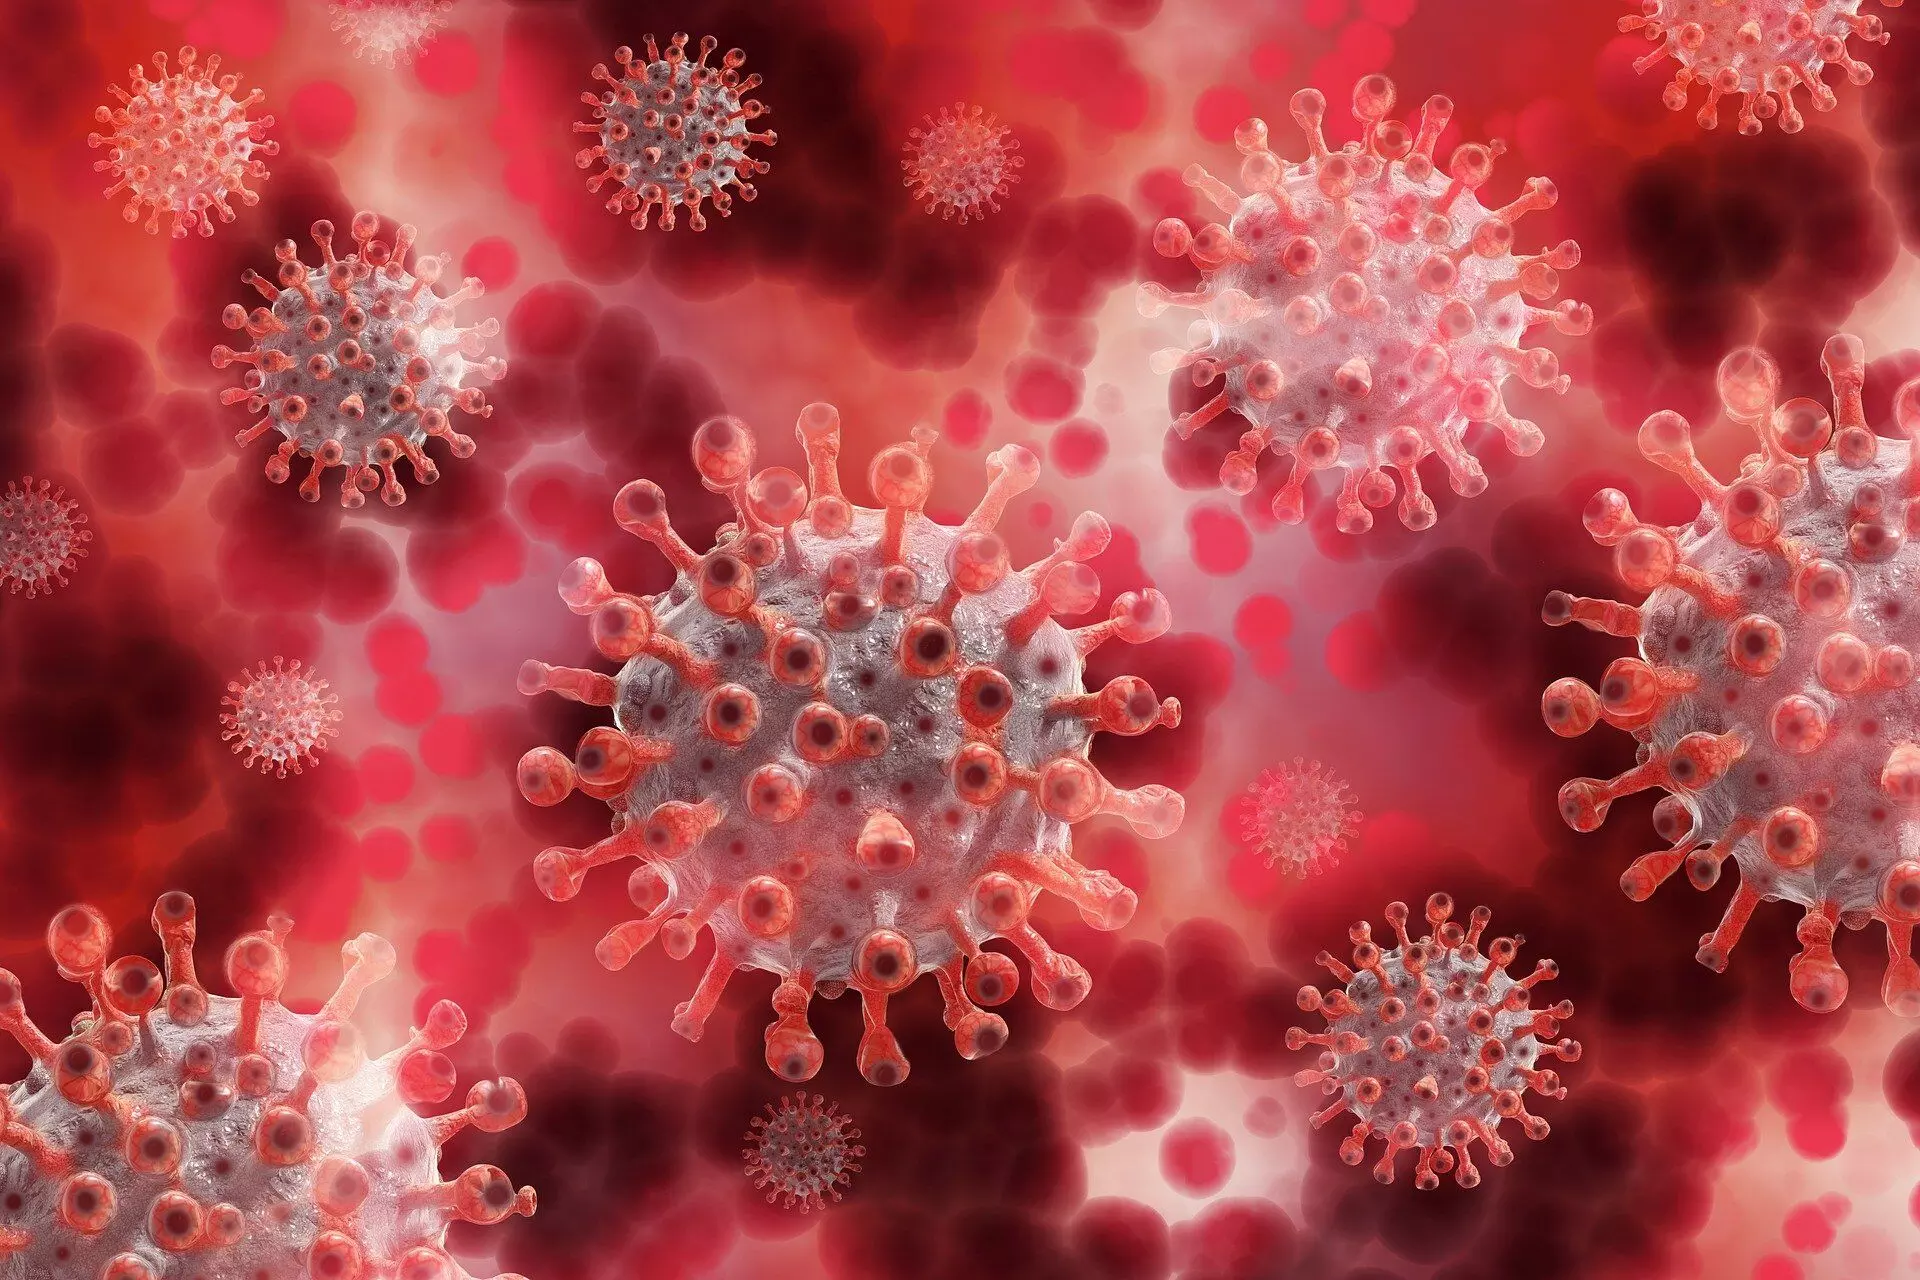 अस्थमा की दवा भी कोविड से लड़ने में कारगर: शोध